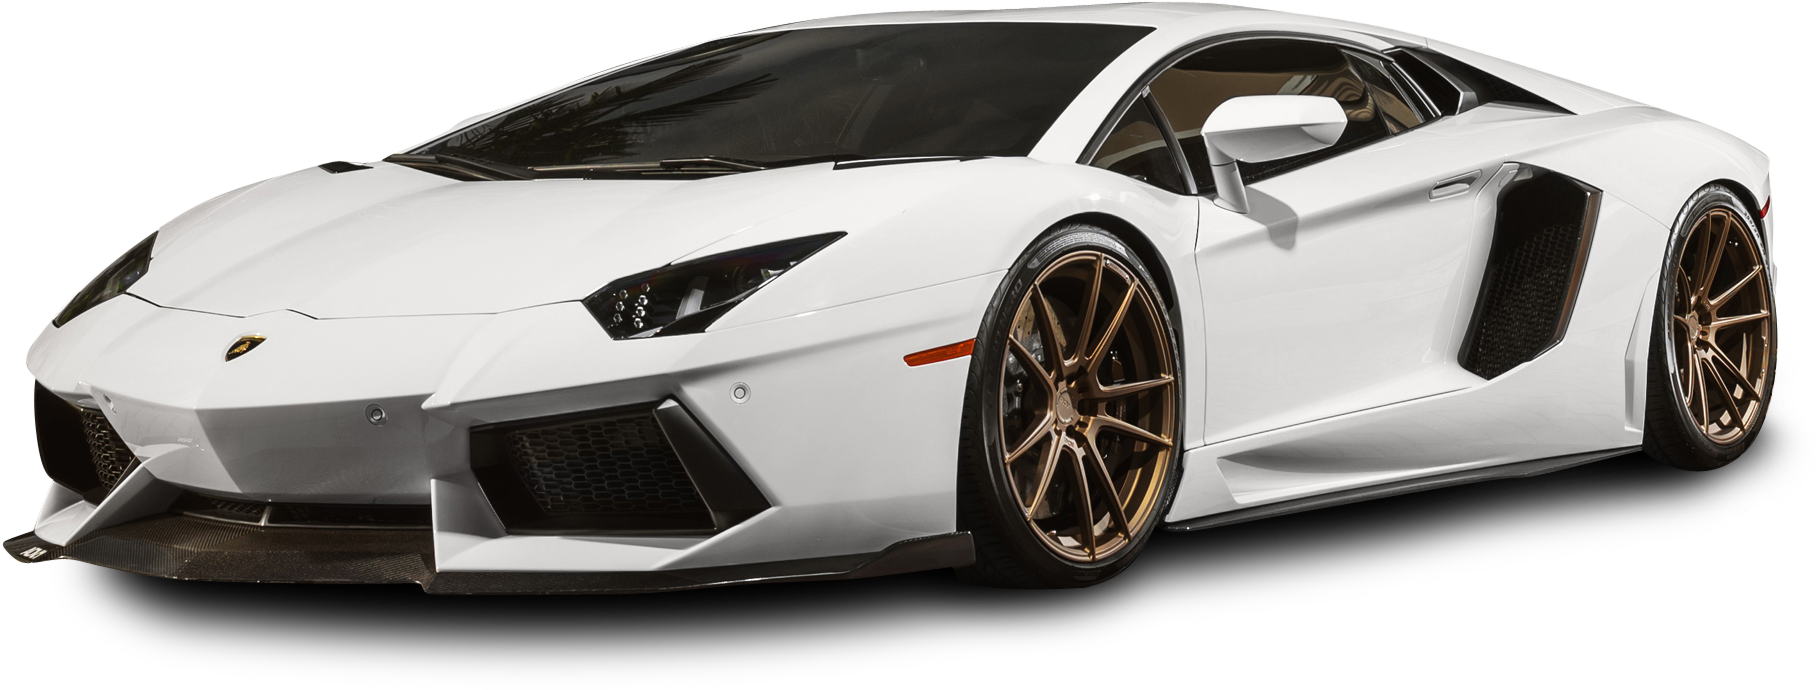 Lamborghini PNG Images HD